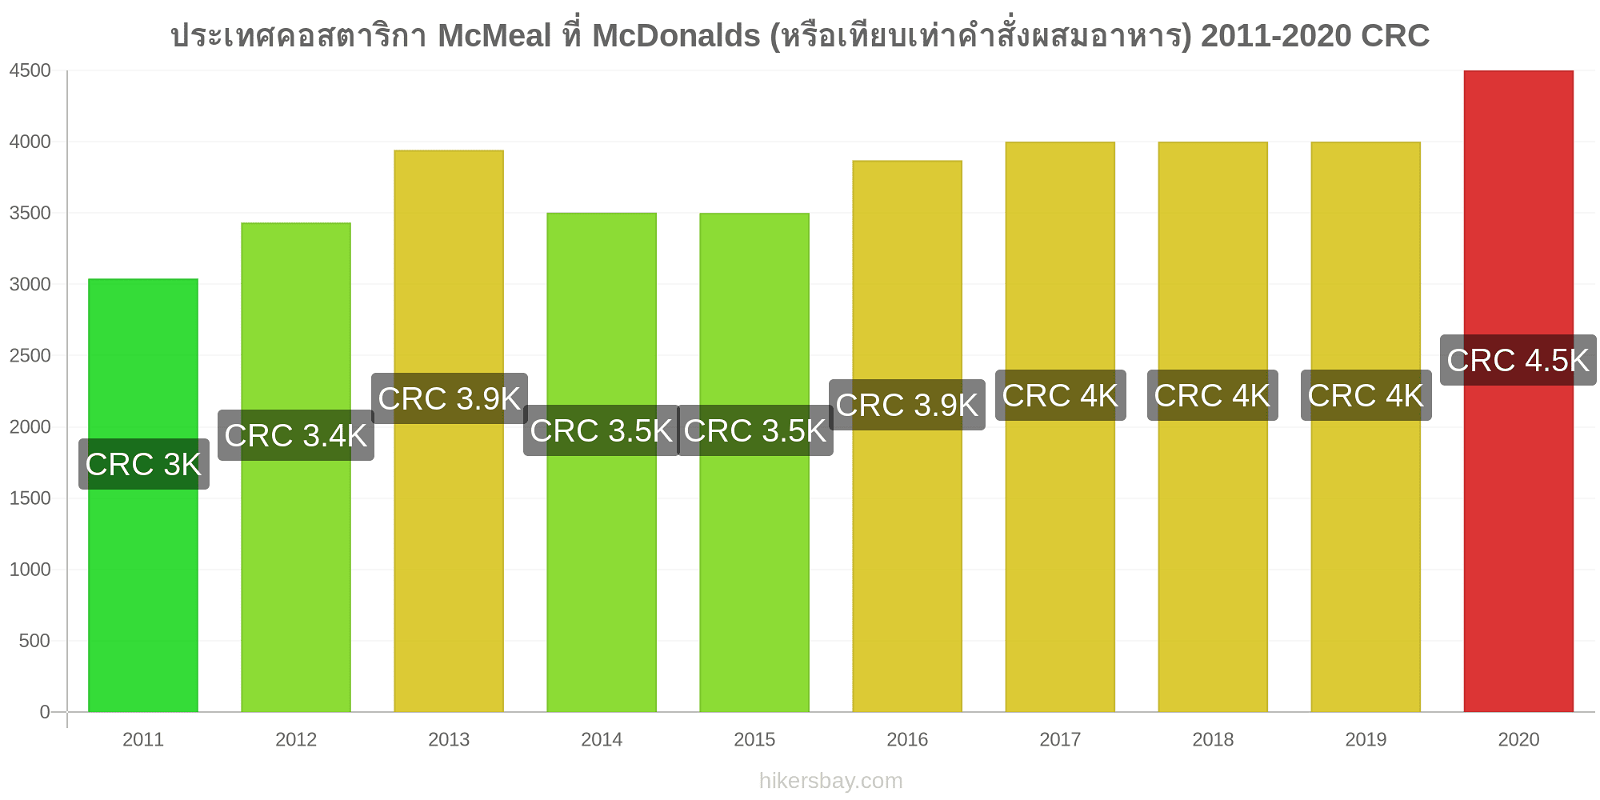 ประเทศคอสตาริกา การเปลี่ยนแปลงราคา McMeal ที่ McDonalds (หรือเทียบเท่าคำสั่งผสมอาหาร) hikersbay.com